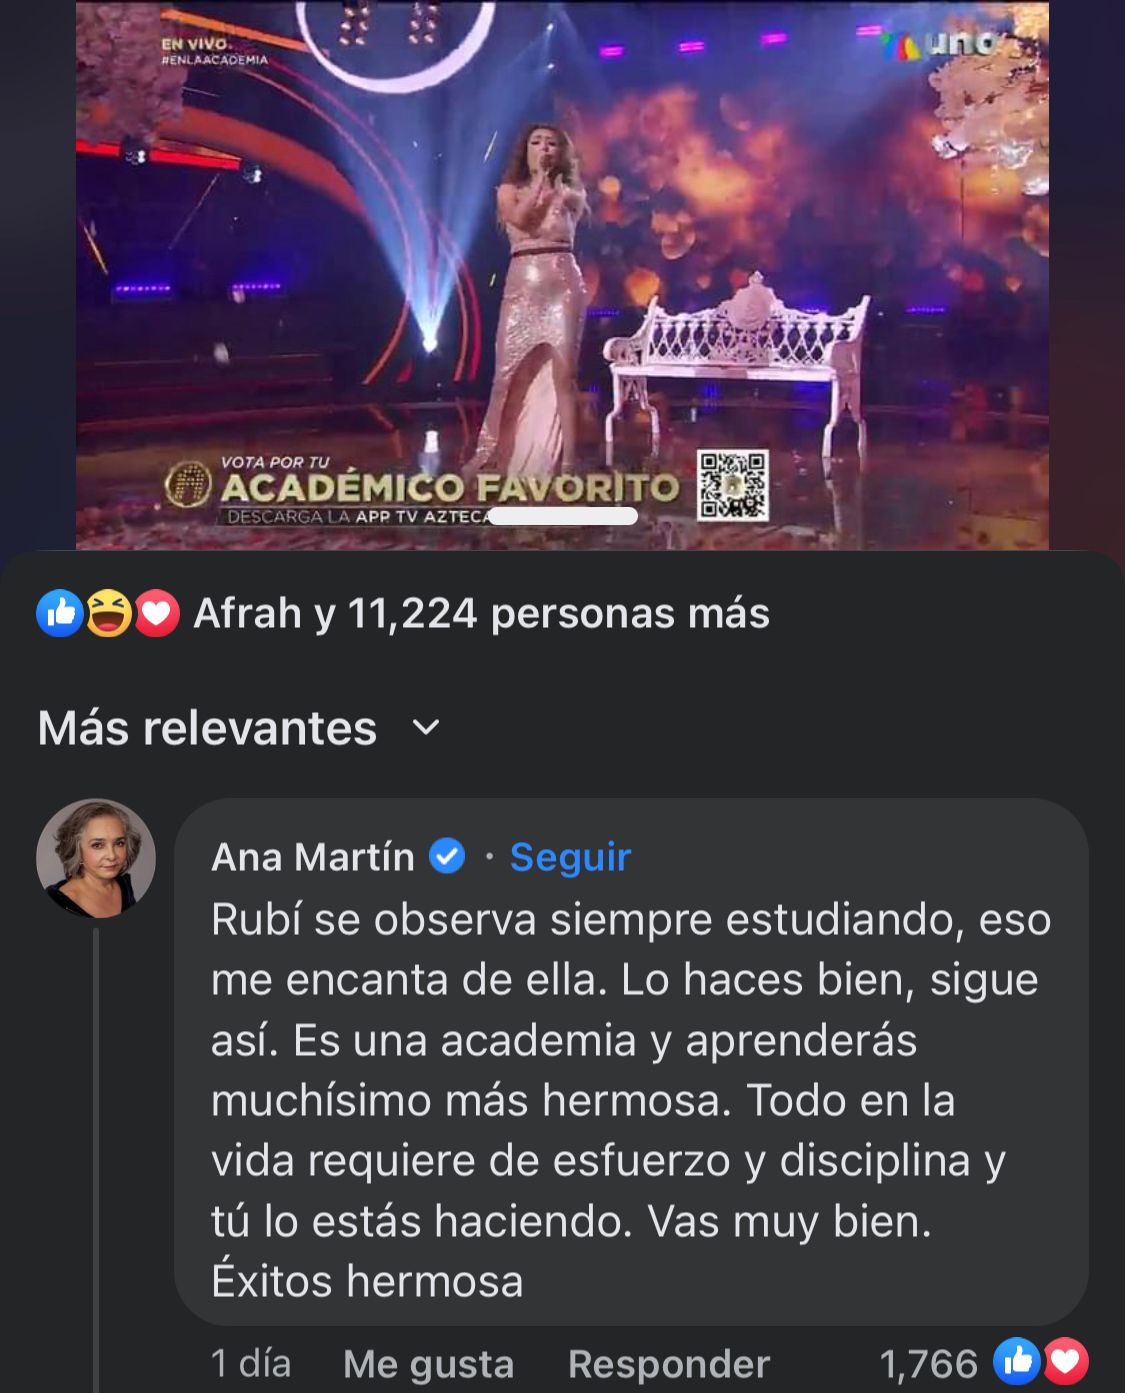 El mensaje de Ana Martín fue ovacionado por los fans de "La Academia"
(Foto: Captura de Facebook)